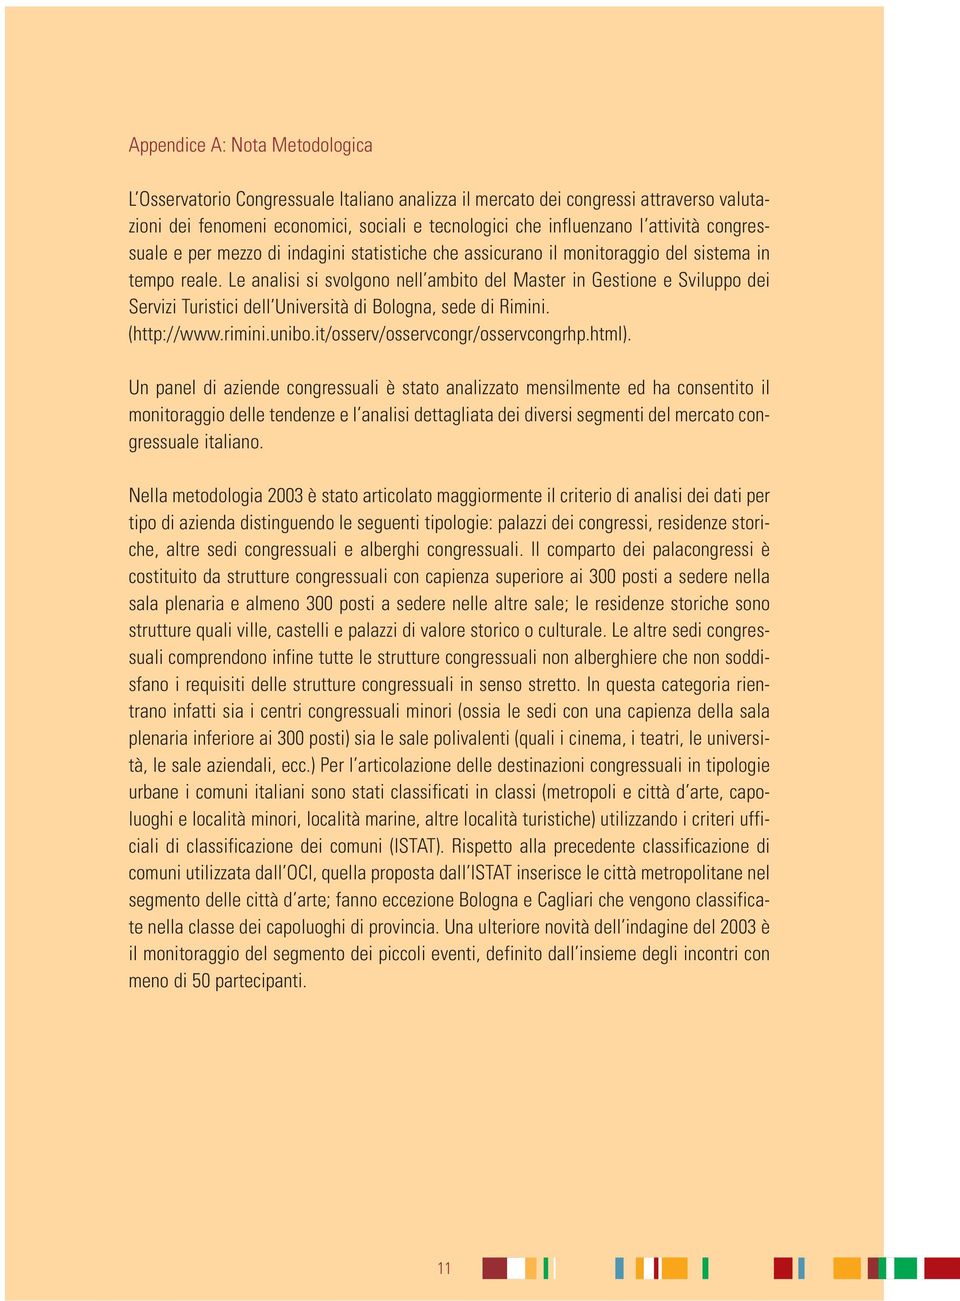 Le analisi si svolgono nell ambito del Master in Gestione e Sviluppo dei Servizi Turistici dell Università di Bologna, sede di Rimini. (http://www.rimini.unibo.it/osserv/osservcongr/osservcongrhp.